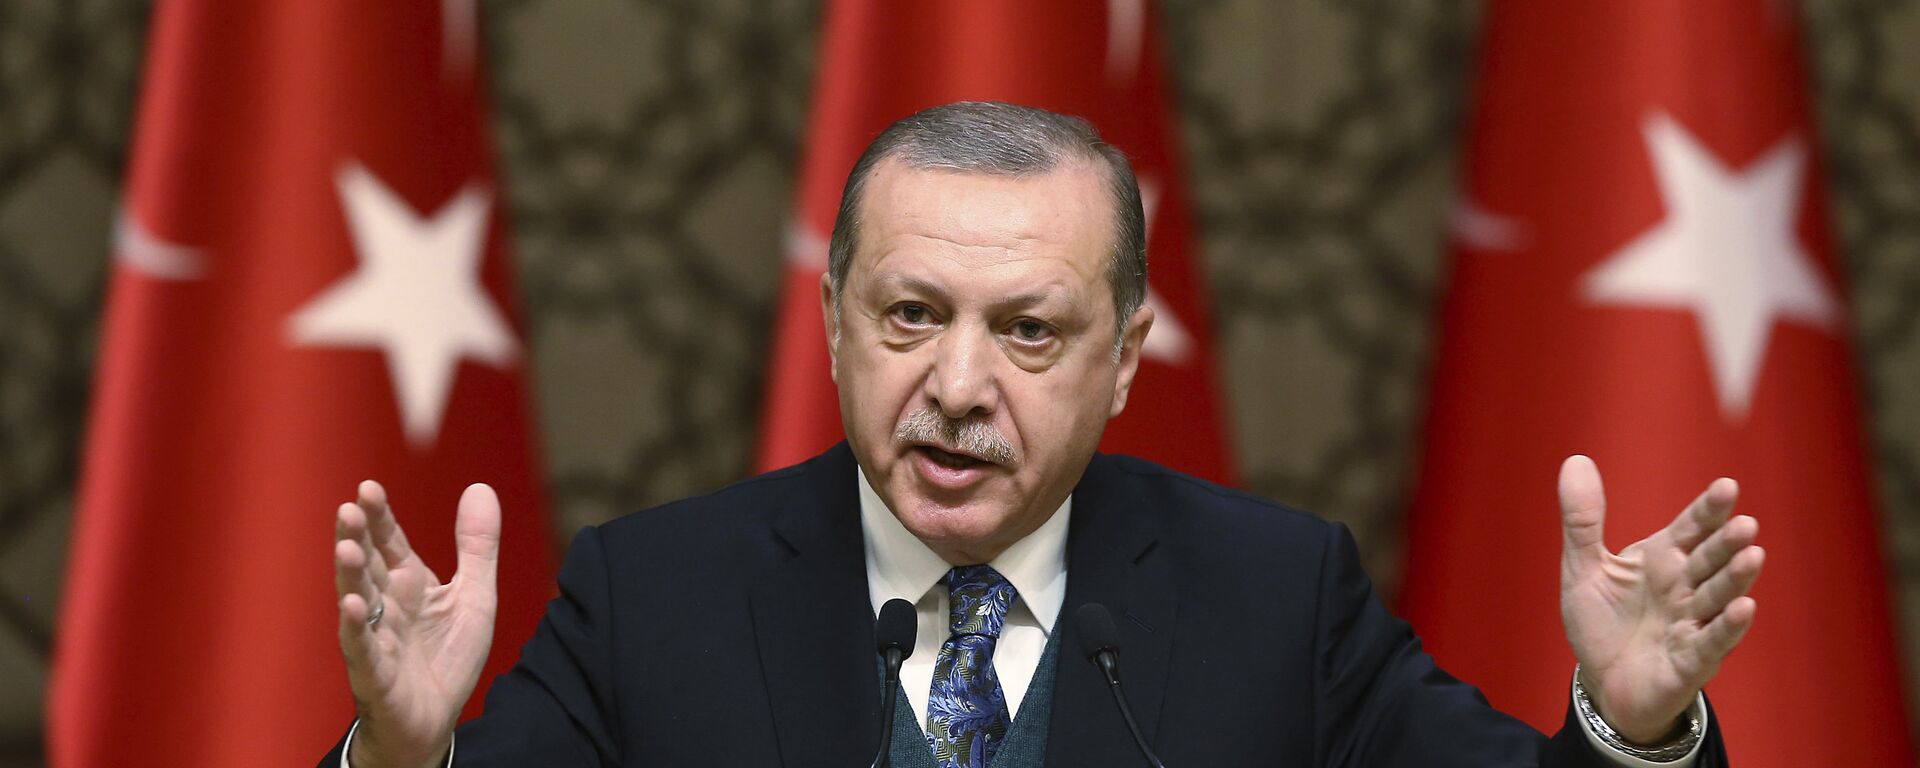 El presidente de Turquía, Recep Tayyip Erdogan, habla durante una ceremonia de premios culturales en Ankara, Turquía - Sputnik Mundo, 1920, 23.05.2022